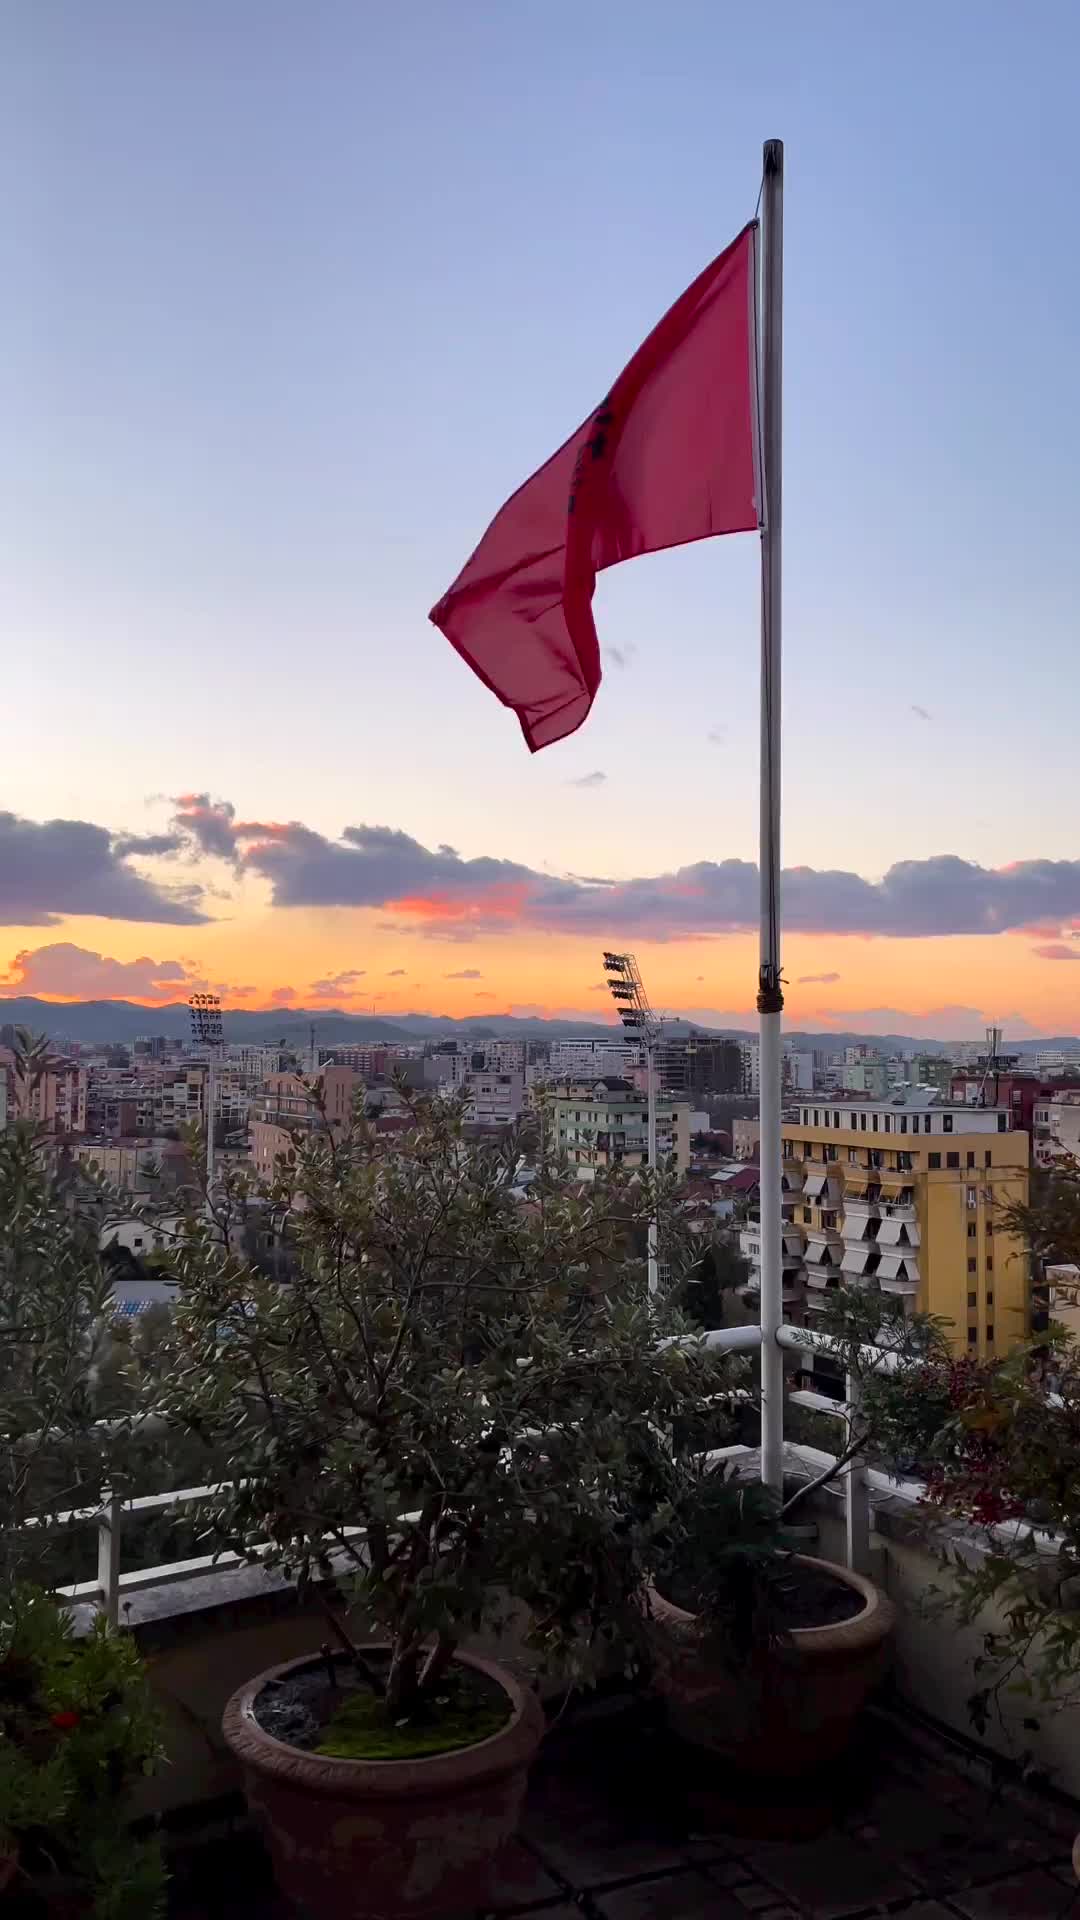 Tirana sky🌖
•
•
•
#albania #shqiperia #tirana #visitalbania #visittirana #tirane #albania🇦🇱 #tiranalifestyle #tiranacity